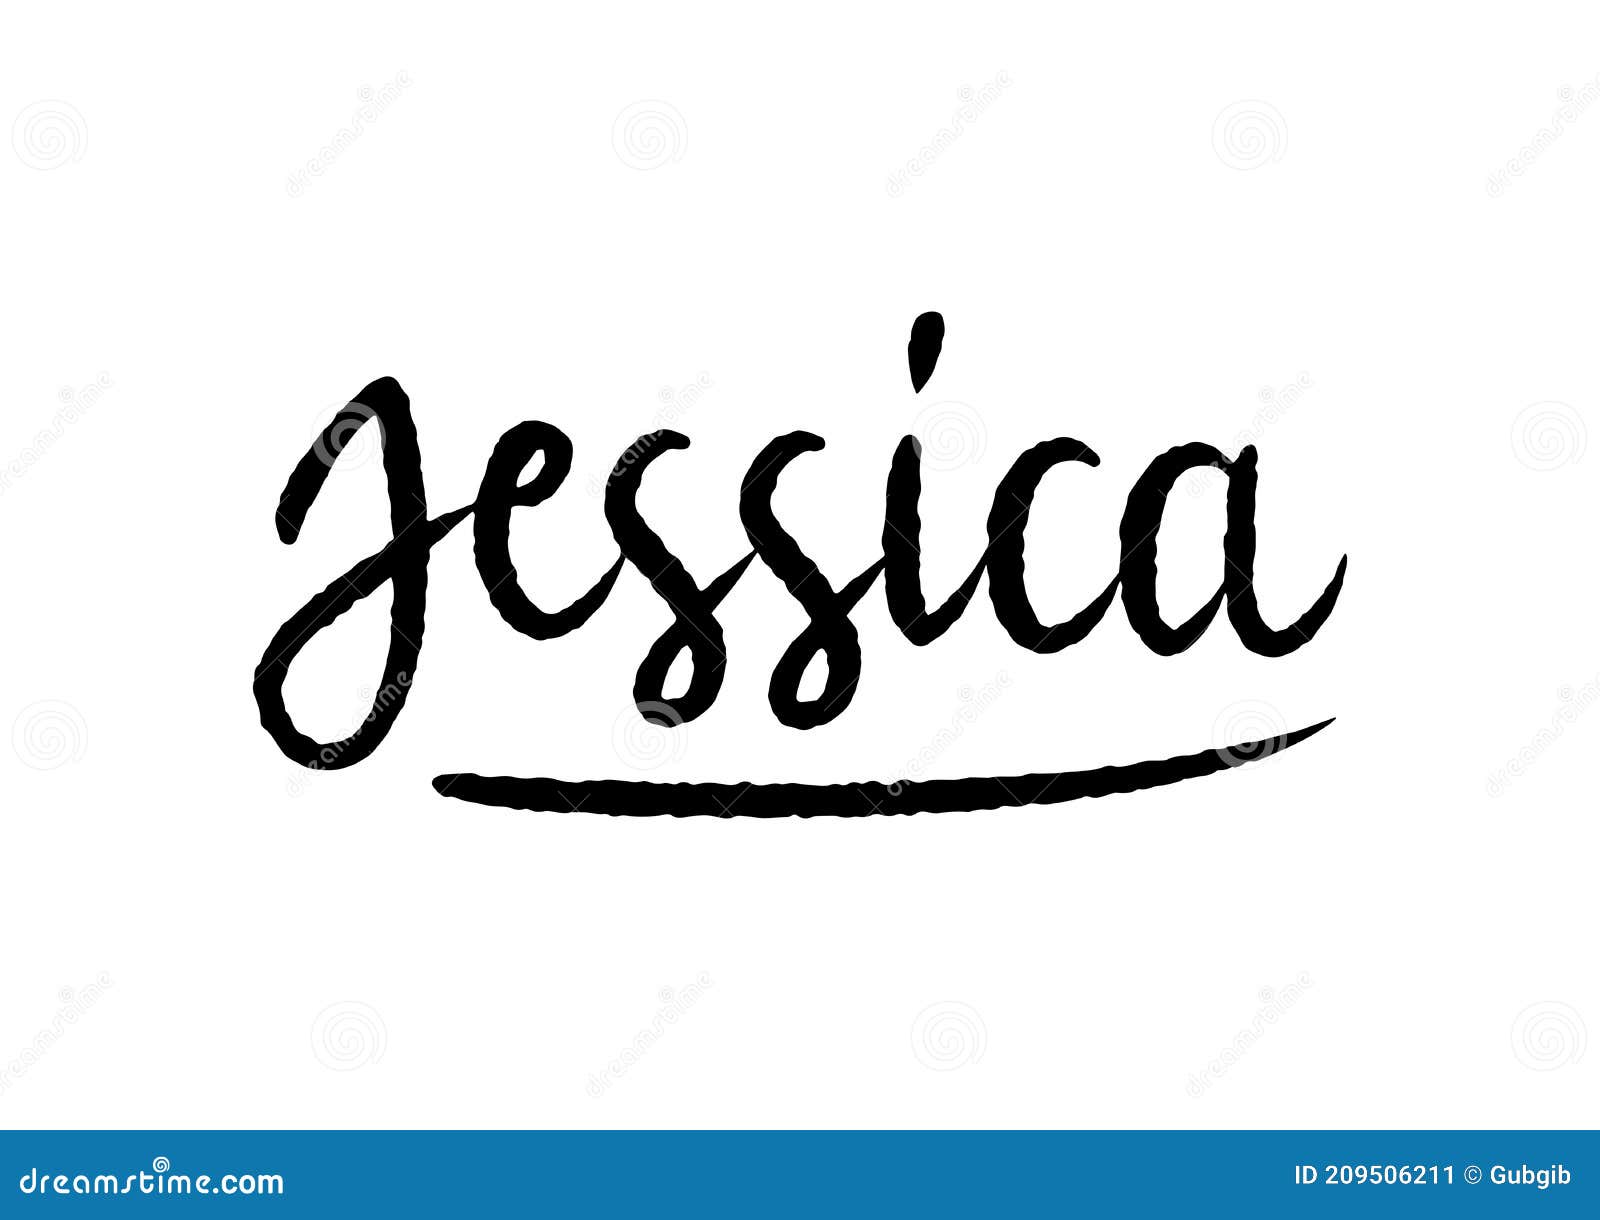 Jessica Name Lettering Pink Tinsels Vector Illustration | CartoonDealer ...